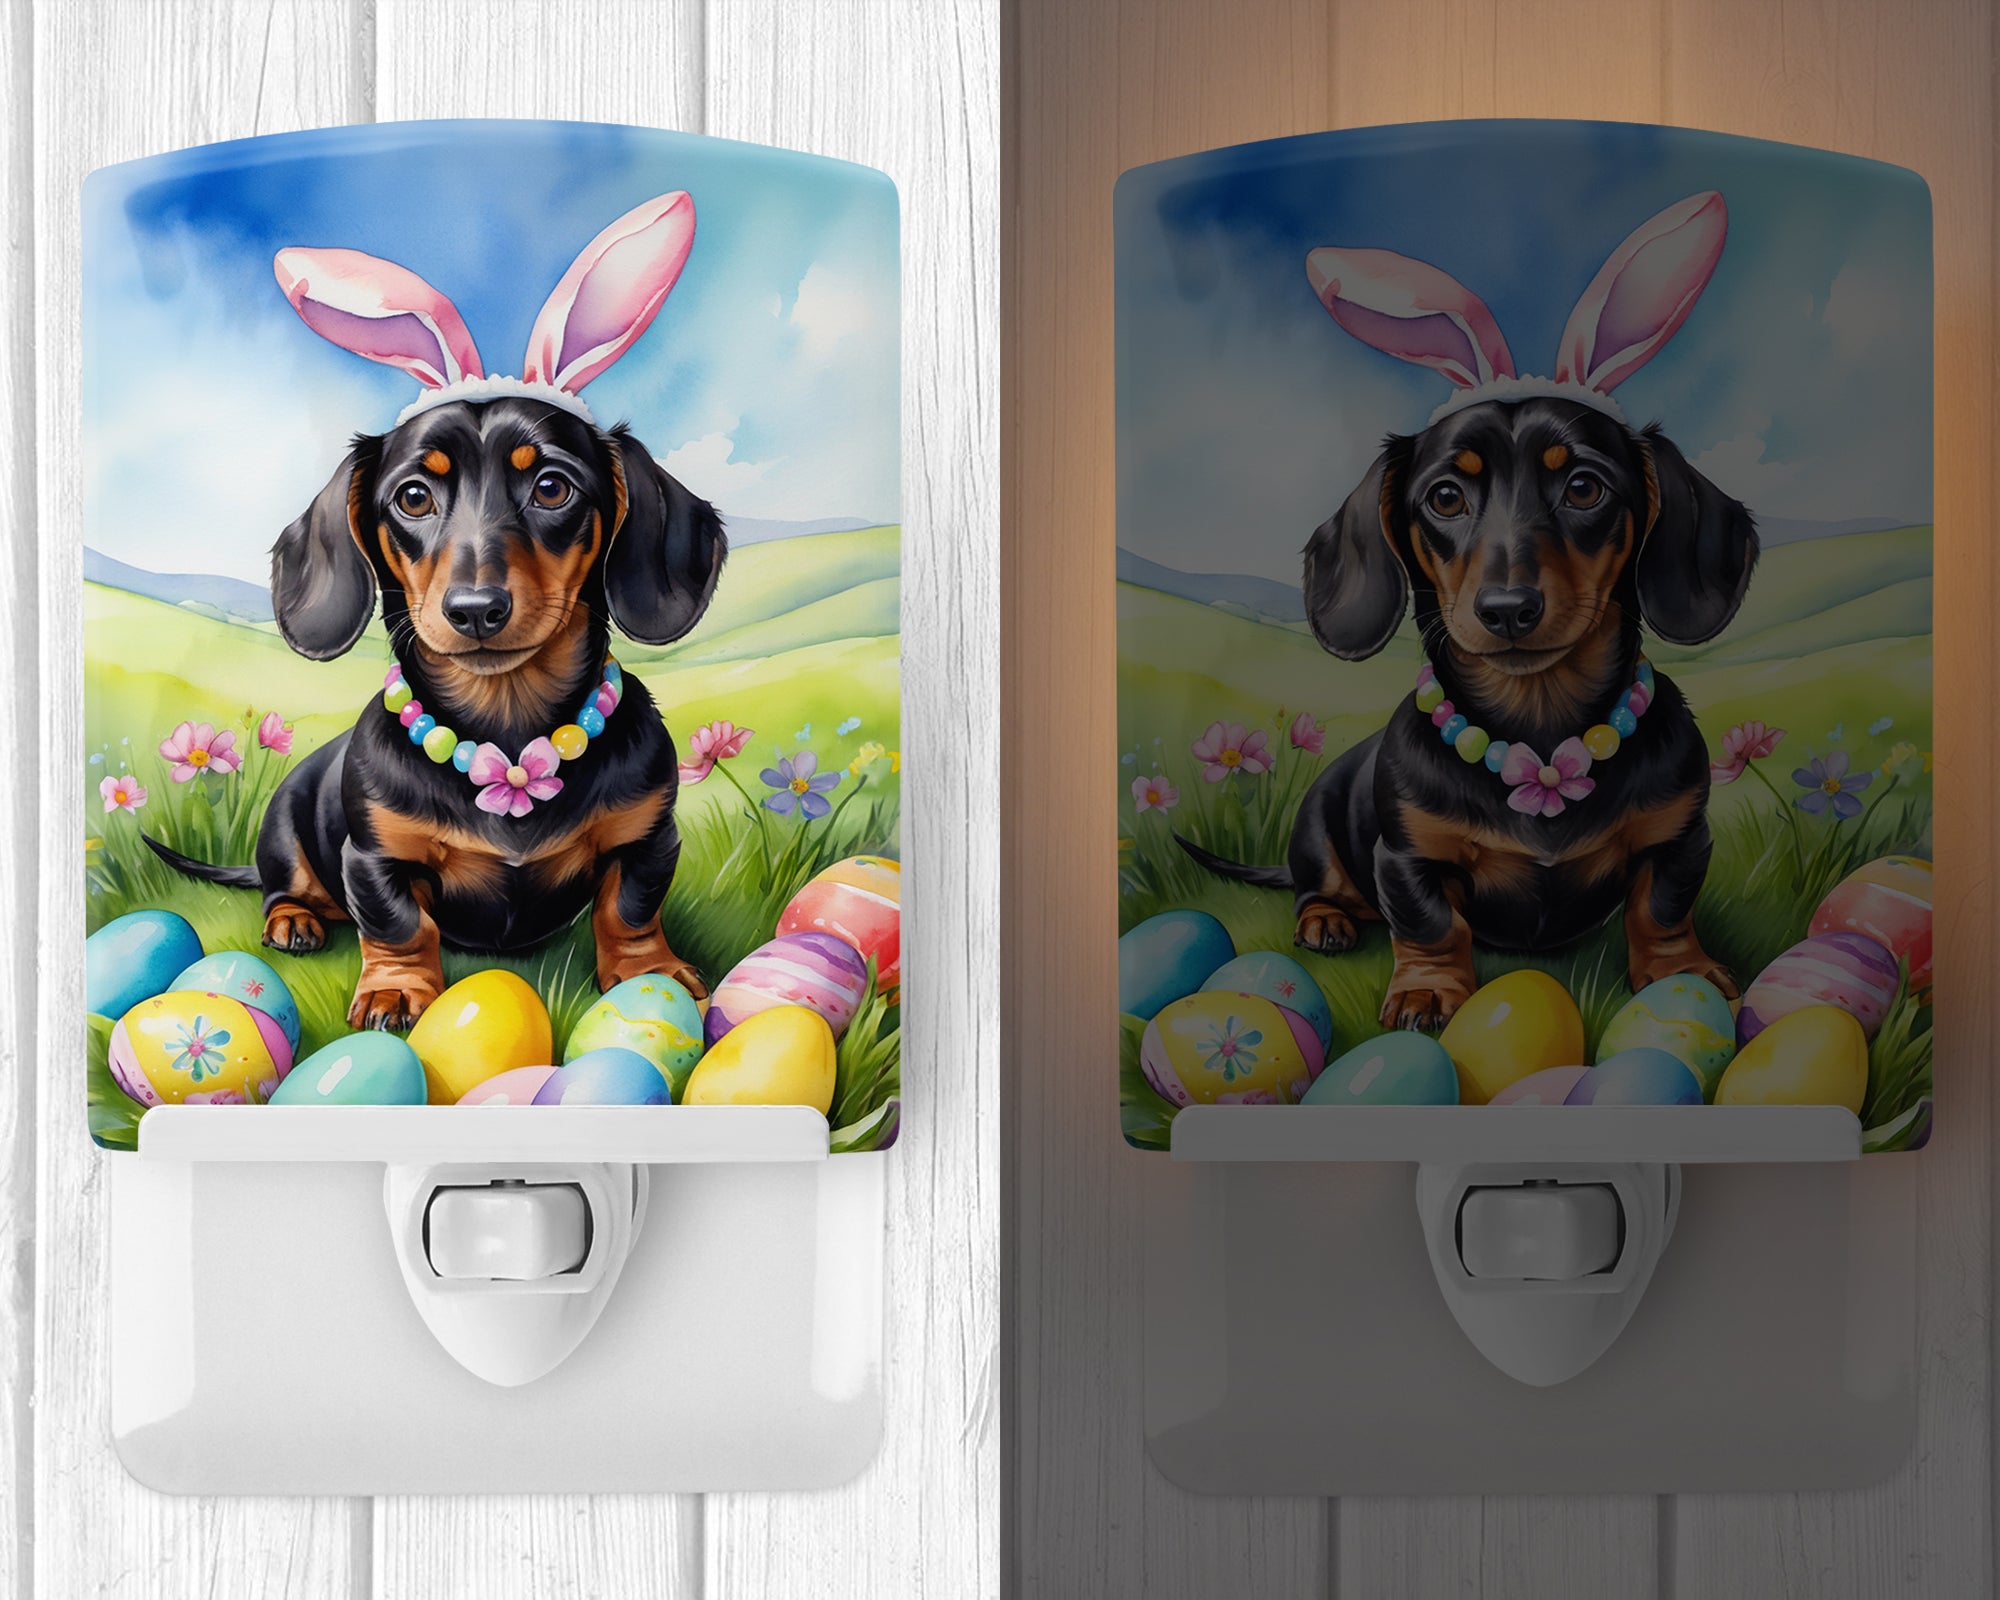 Buy this Dachshund Easter Egg Hunt Ceramic Night Light